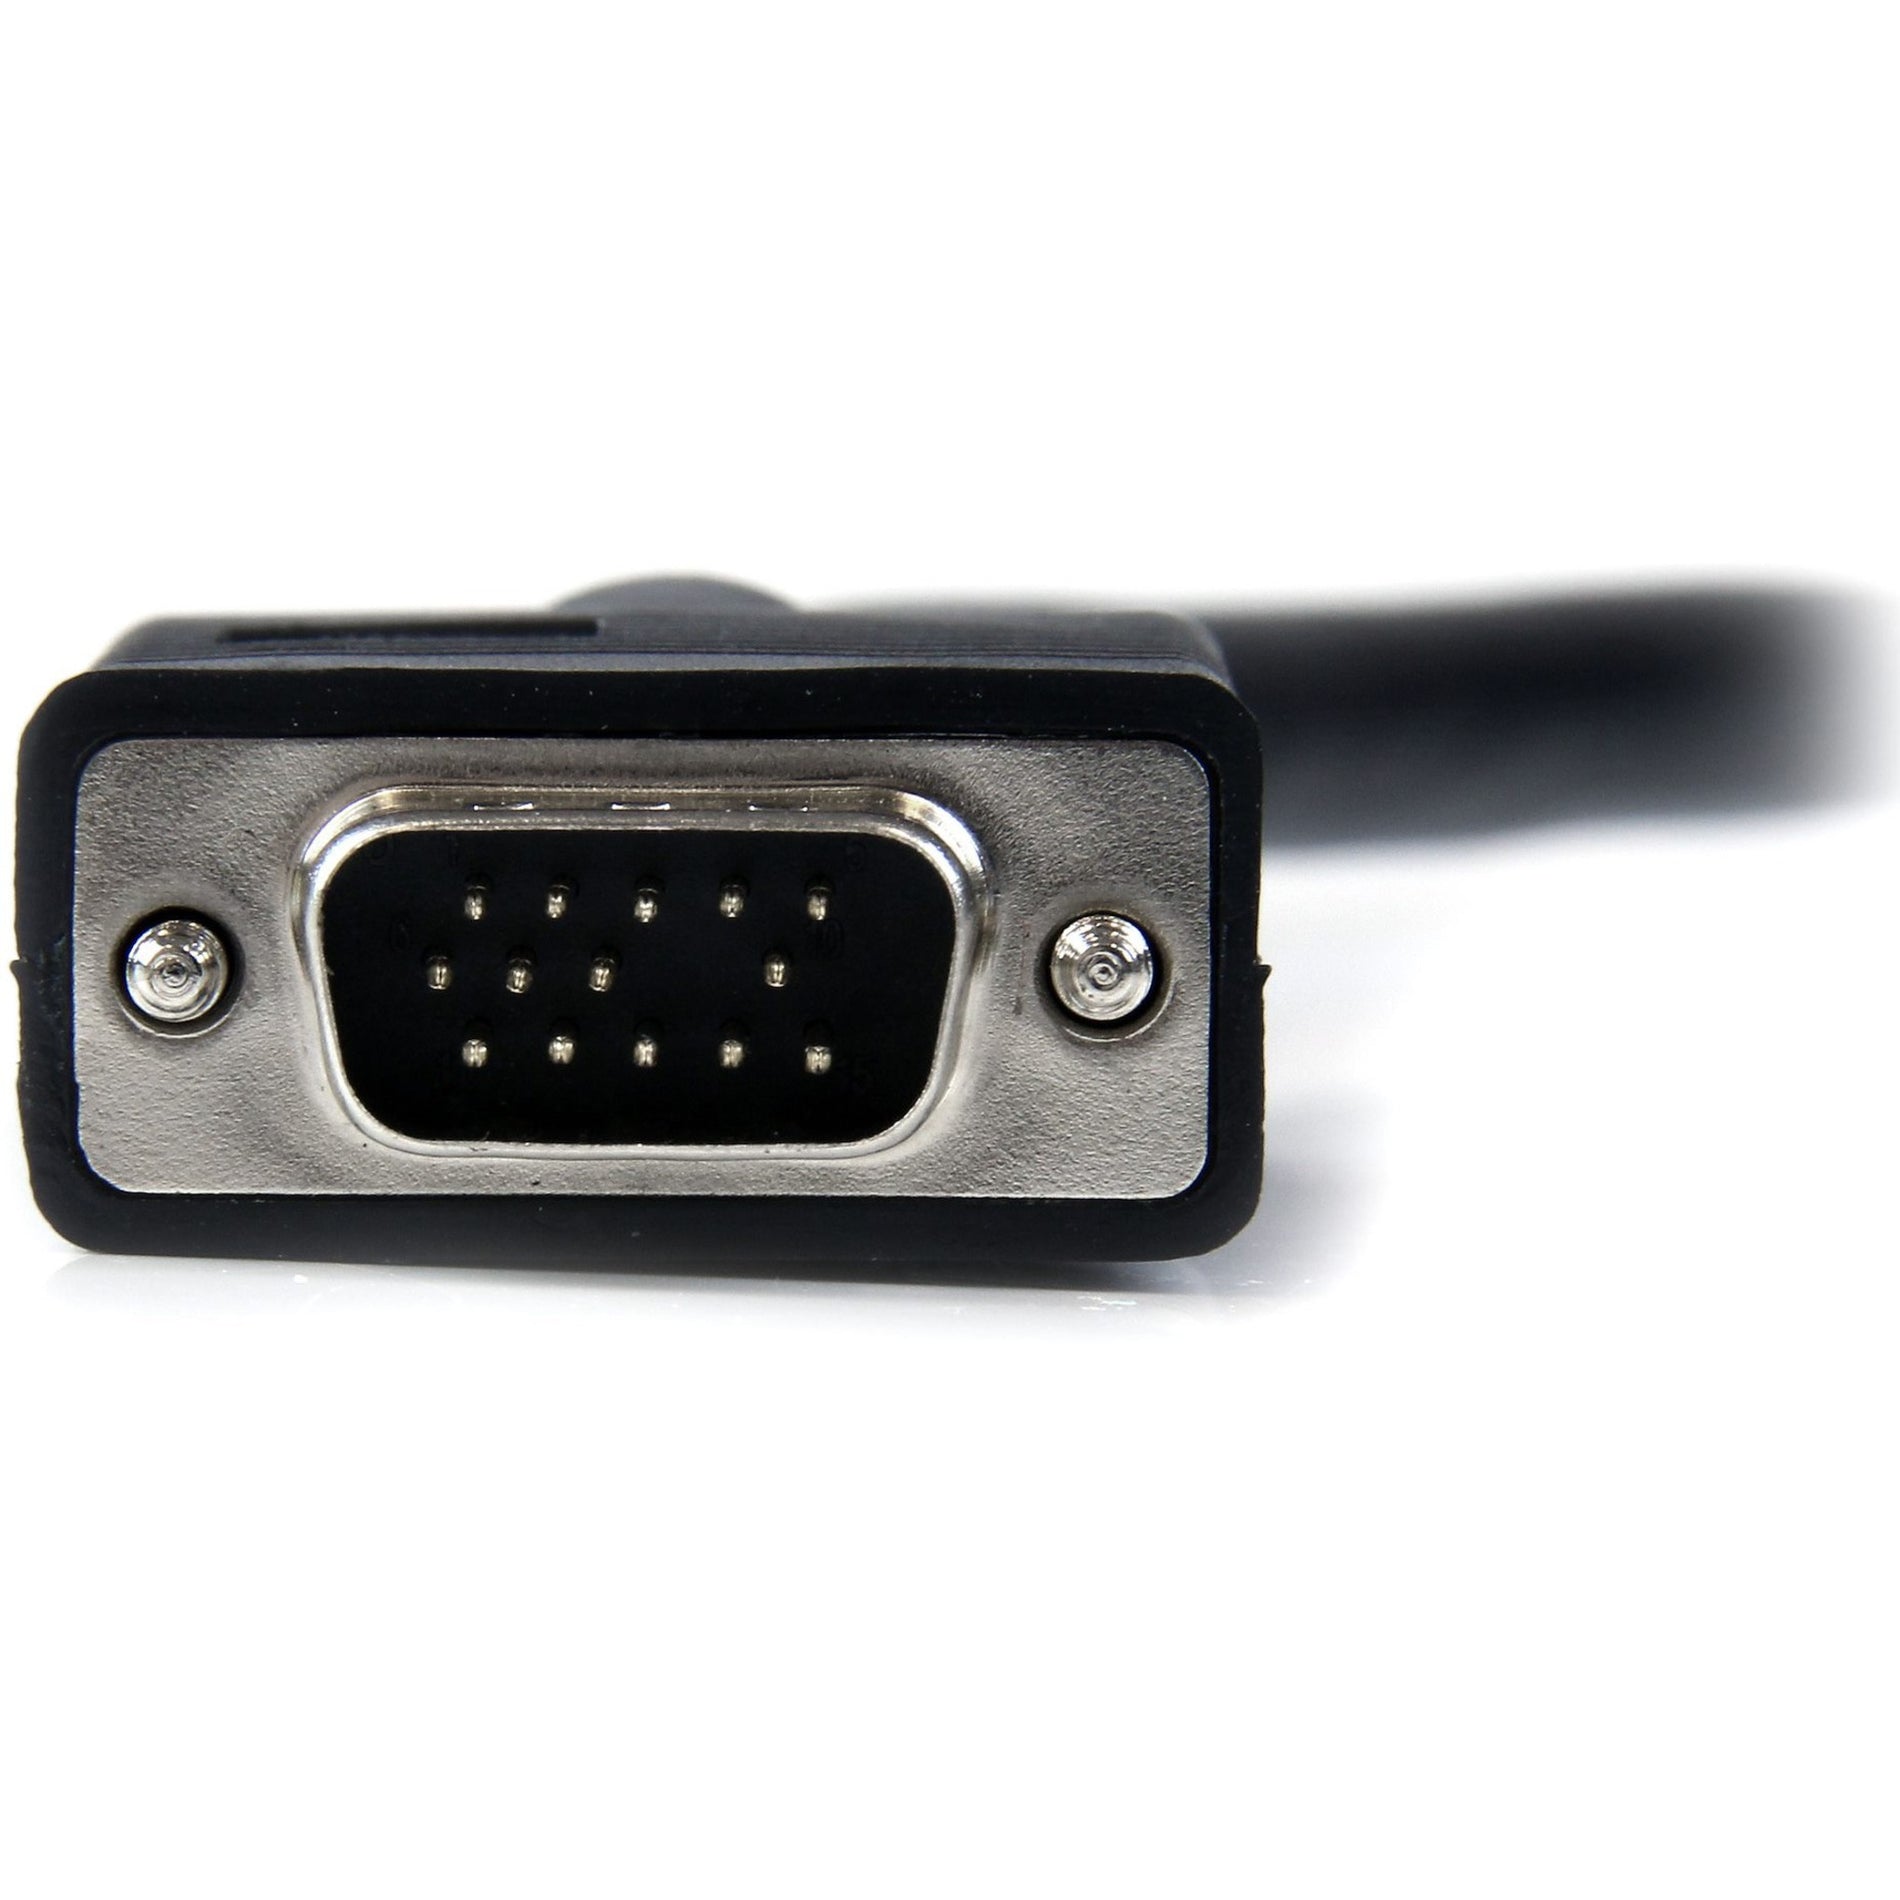 スタートゥリック・ドットコム MXT101MMHQ10 10フィート コアックス ハイレゾ モニター VGA ケーブル HD15 M/M、成形、EMI 保護、1920 x 1200、ブラック